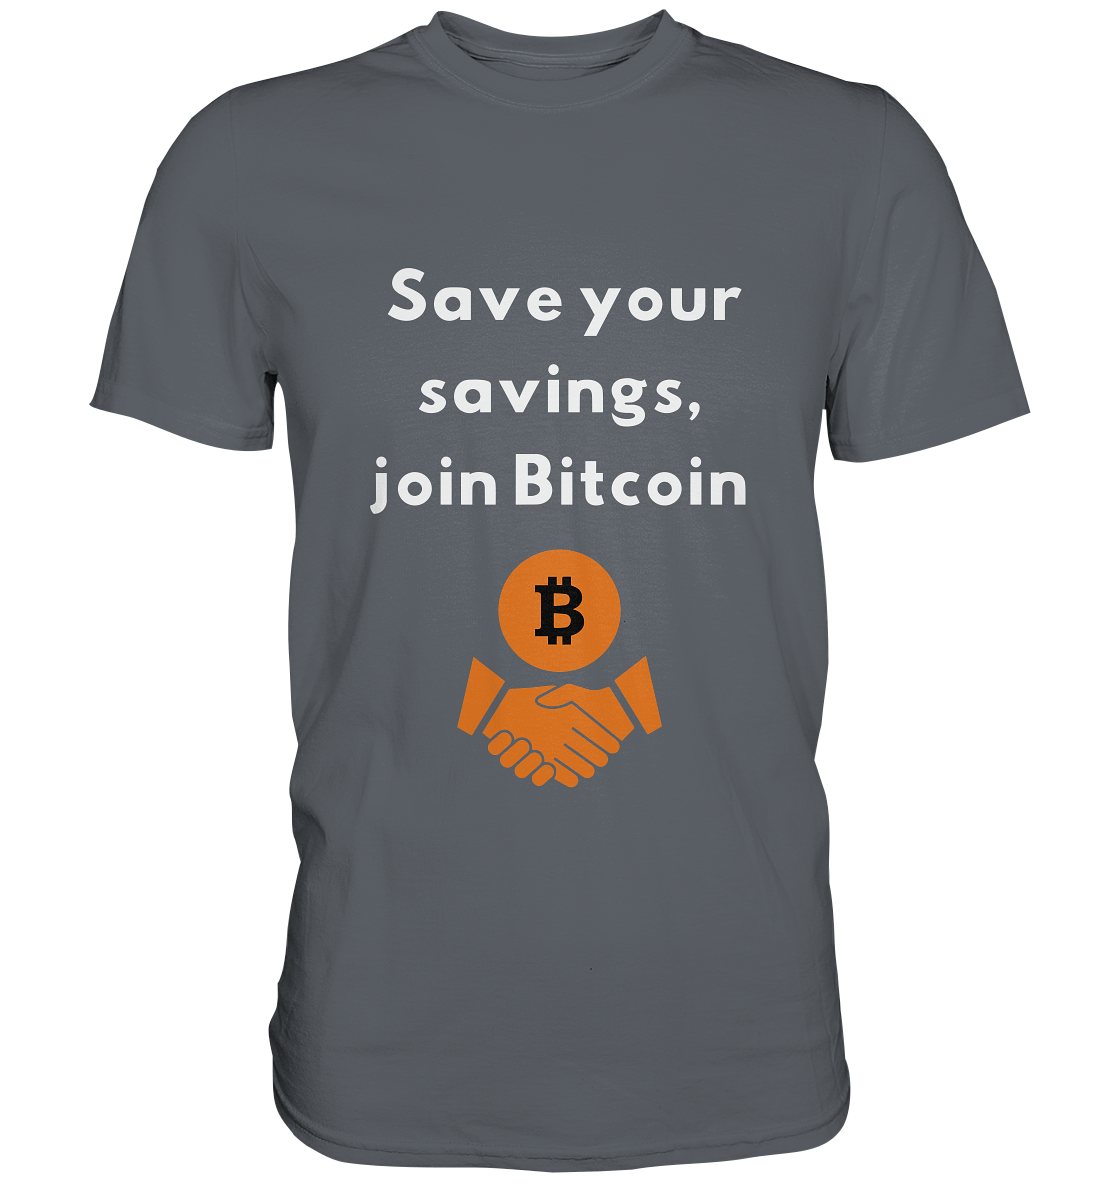 Save your savings, join Bitcoin - Classic Shirt